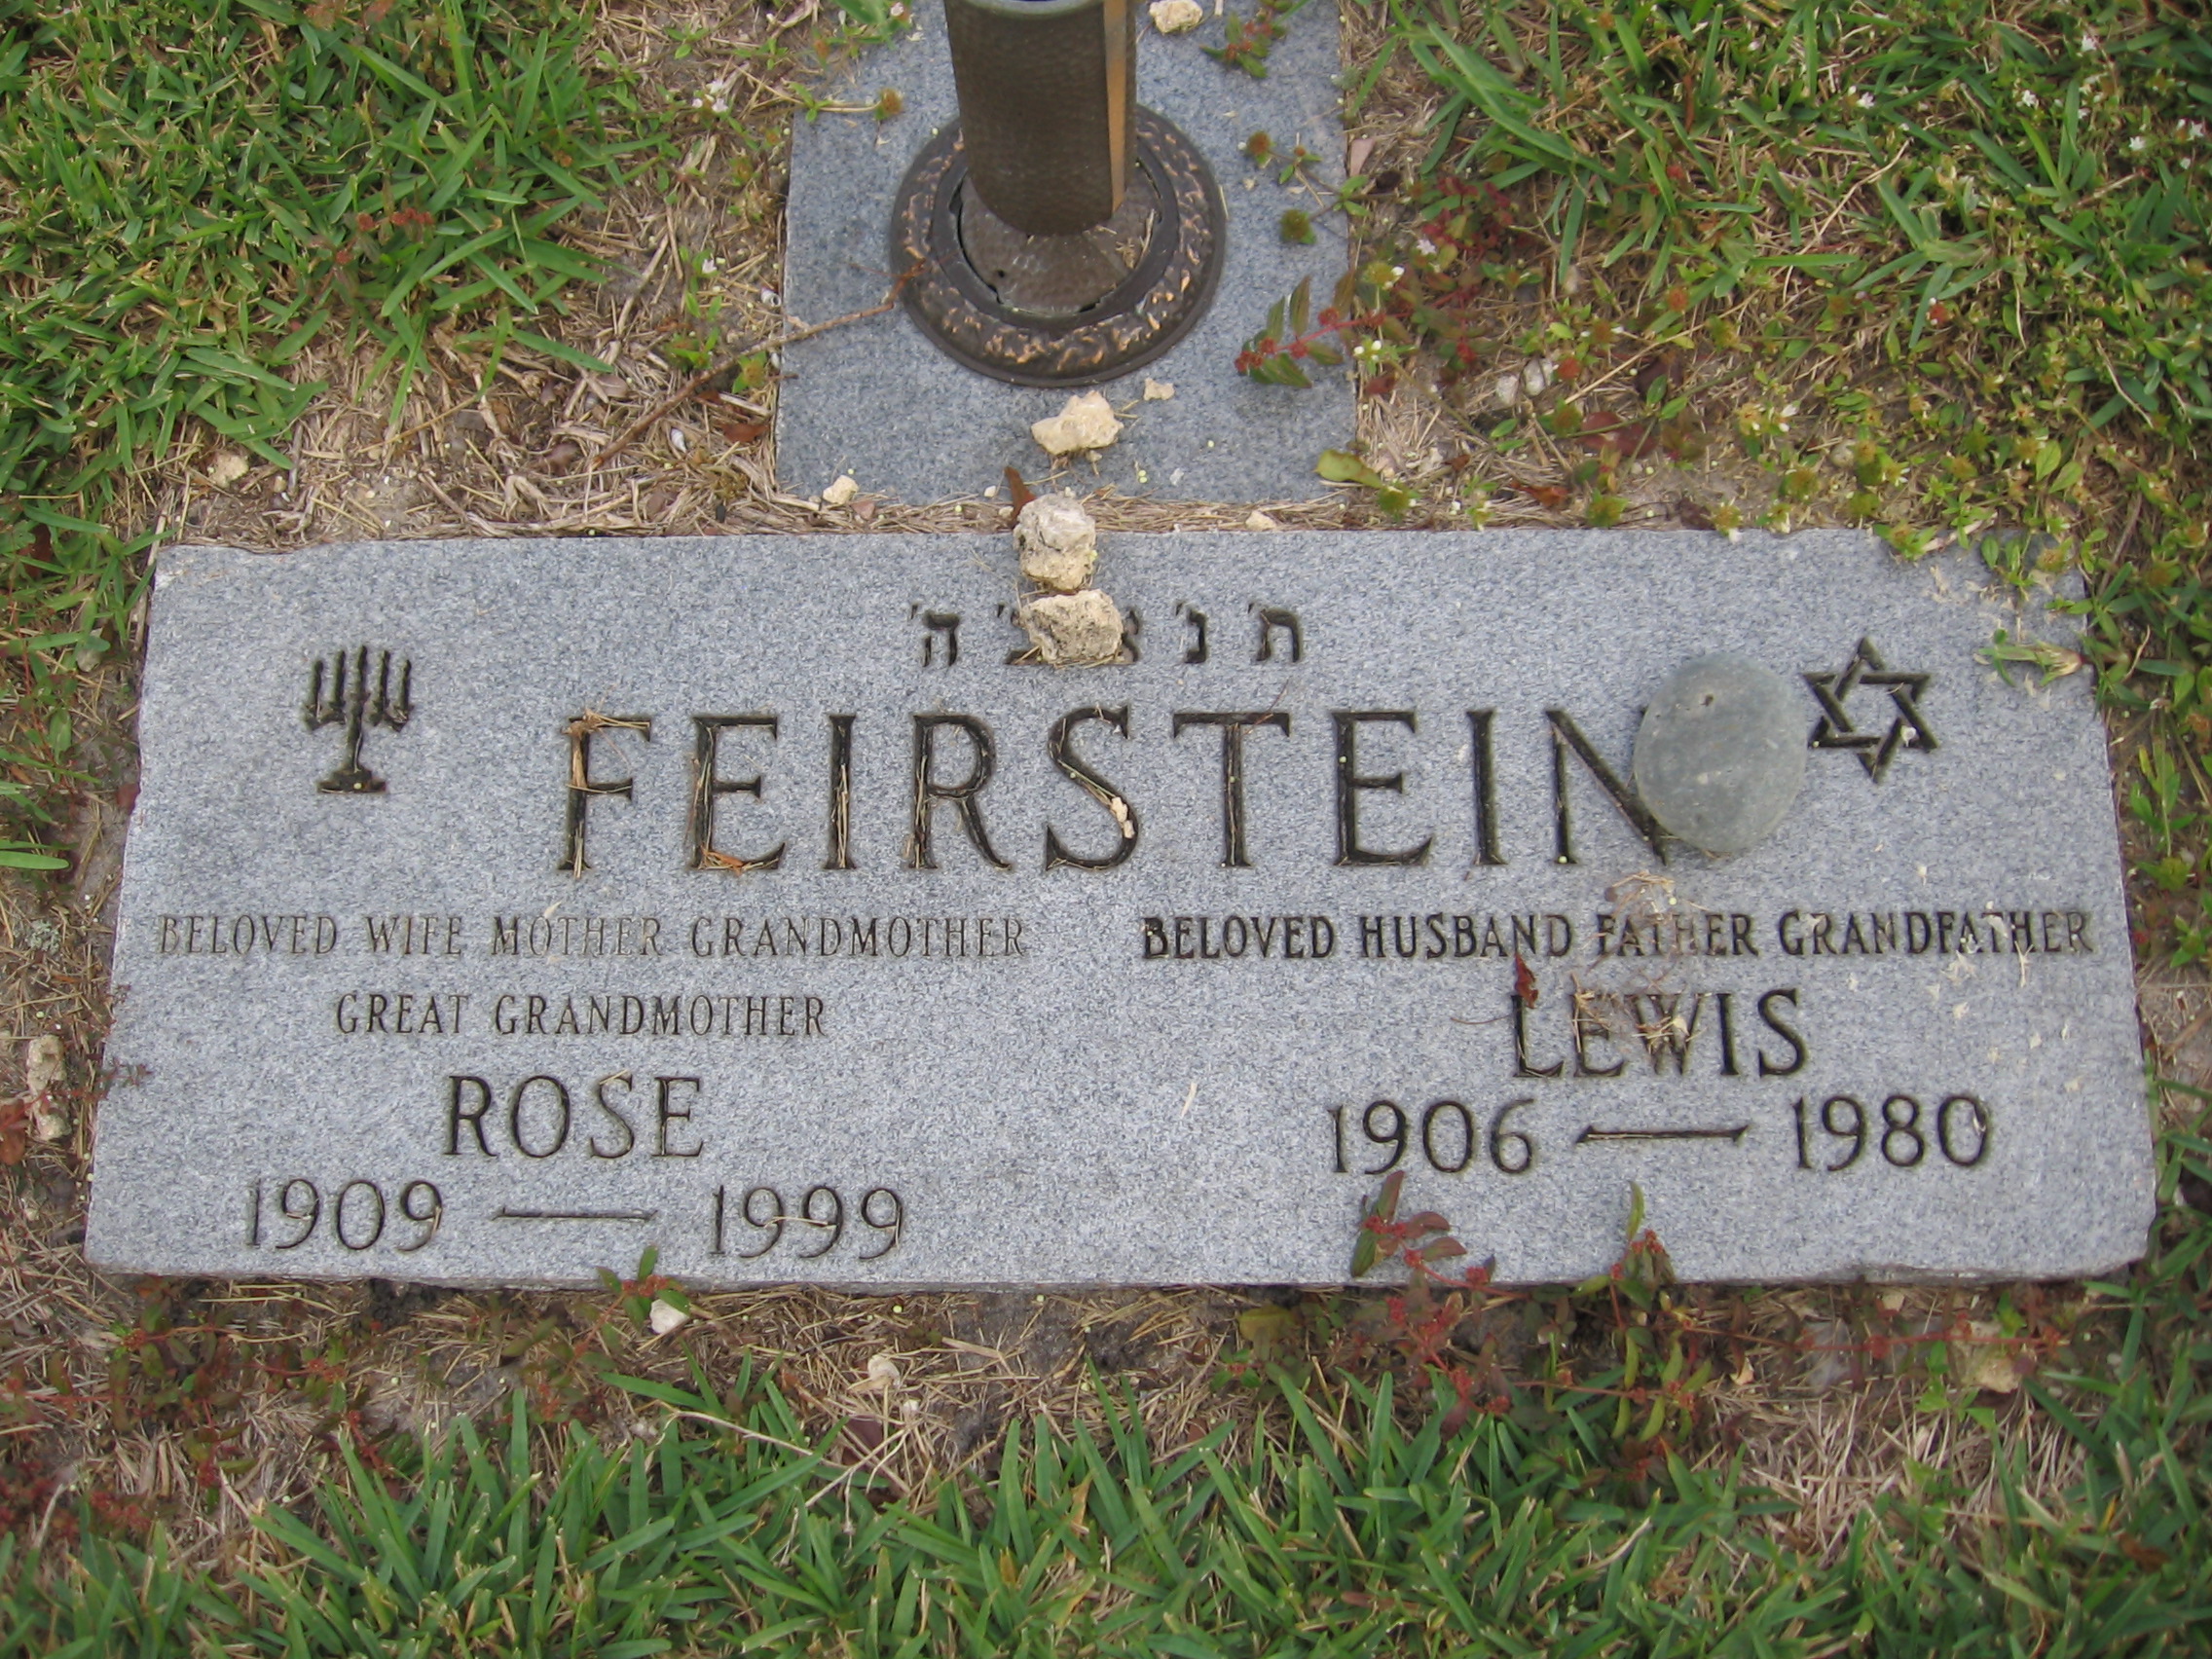 Rose Feirstein